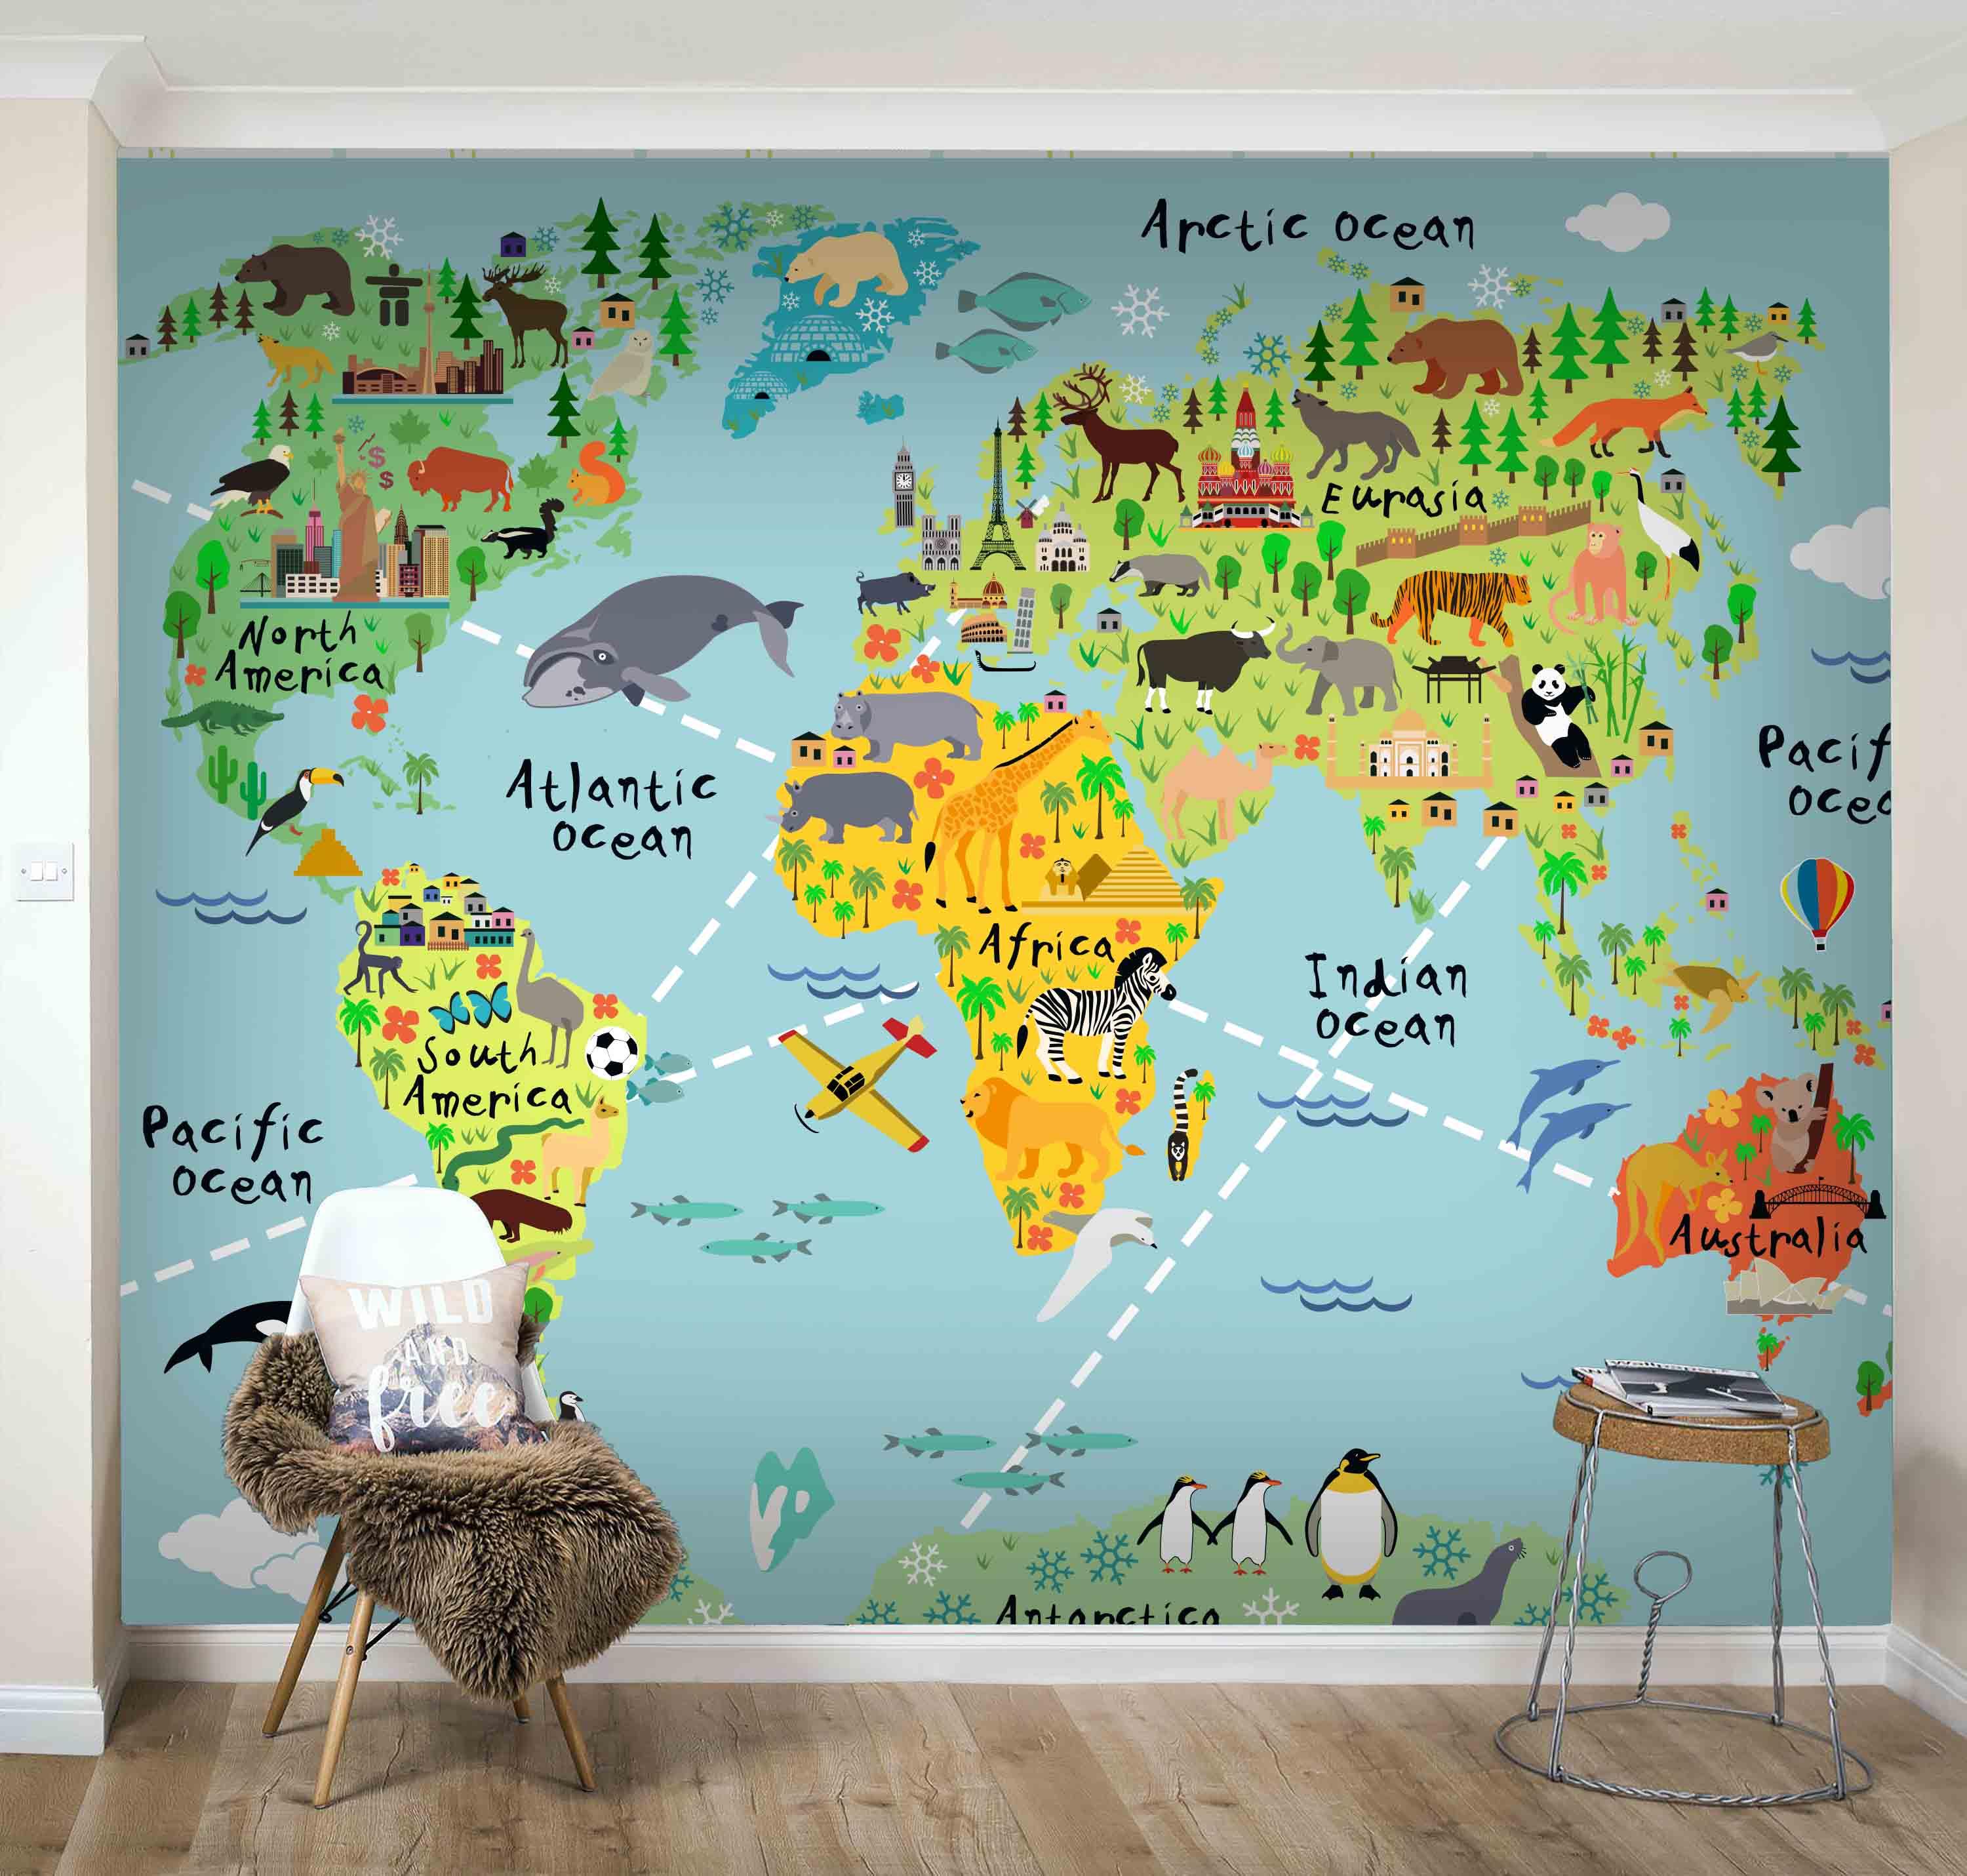 3D Creative Cartoon Animal World Map Wall Mural Wallpaper GD 1824- Jess Art Decoration